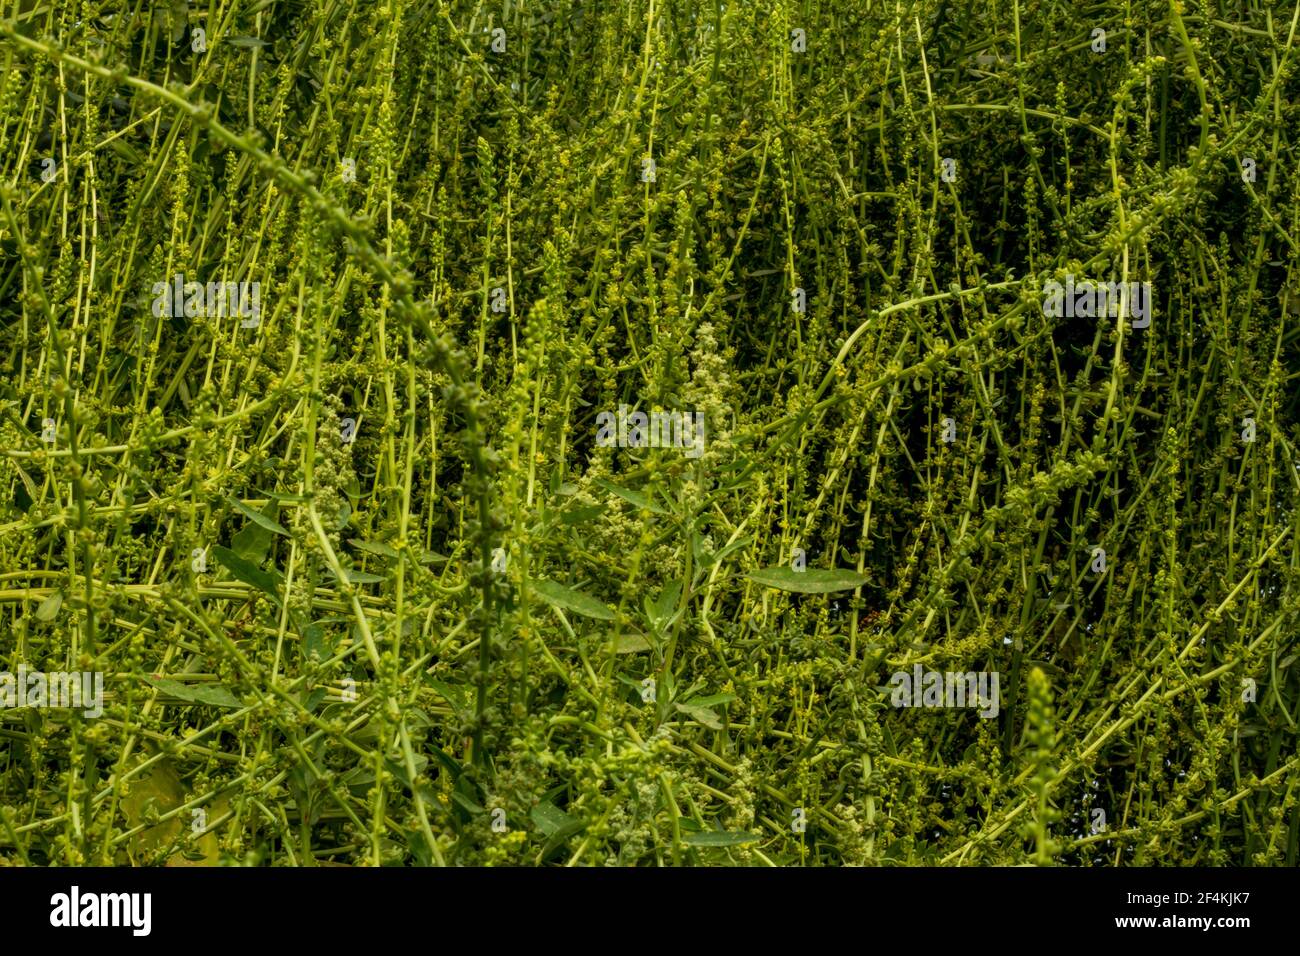 Viele grüne Blattgemüse und Blume, Spinat fällt tatsächlich in eine andere Familie als viele andere bekannte grüne Blattgemüse Stockfoto